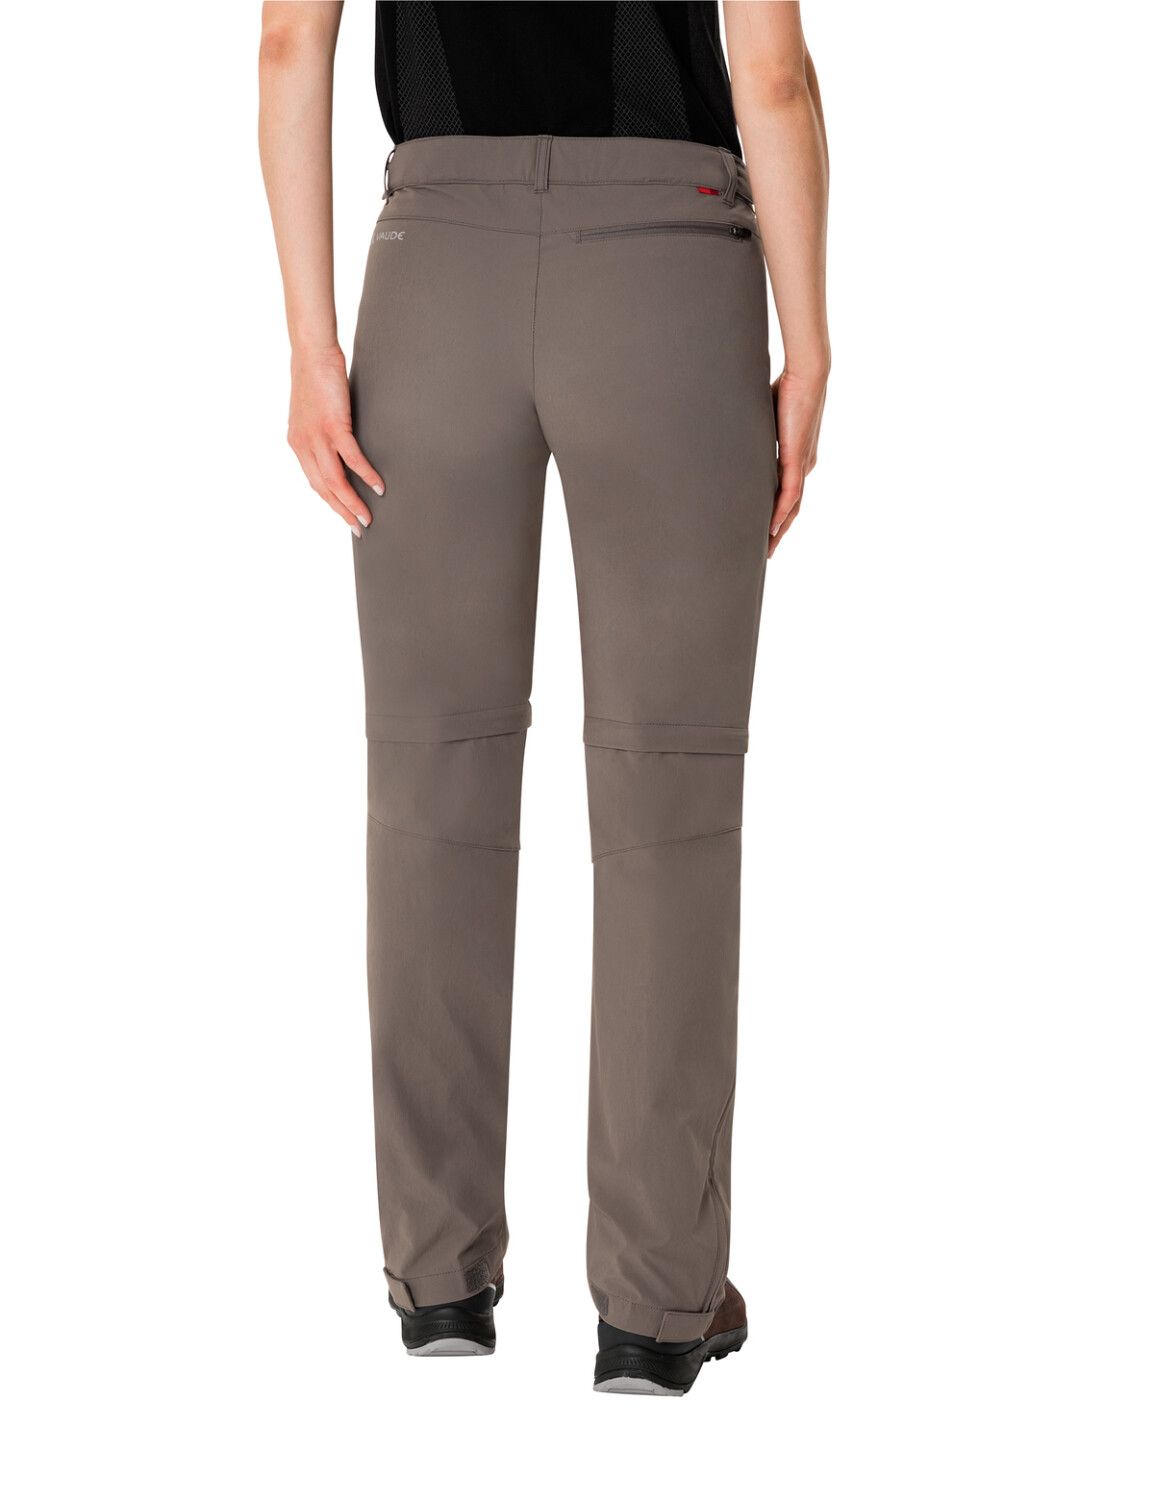 VAUDE Women's Farley Stretch ZO T-Zip Pants (Bild 25)